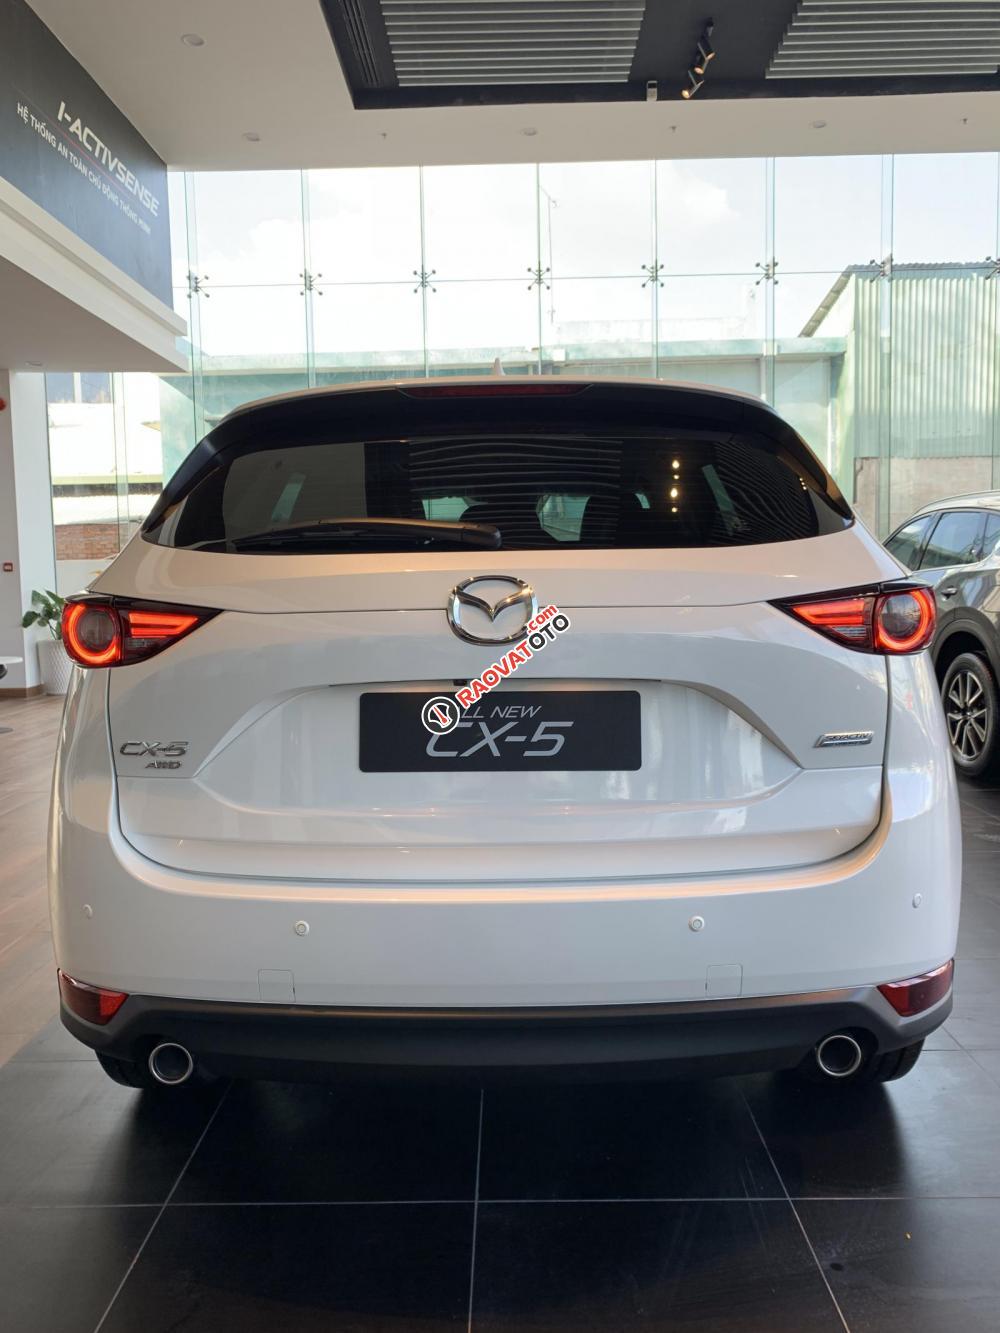 Bán Mazda CX5 giá từ 849tr, đủ màu, đủ phiên bản có xe giao ngay, liên hệ ngay với chúng tôi để được ưu đãi tốt nhất-2